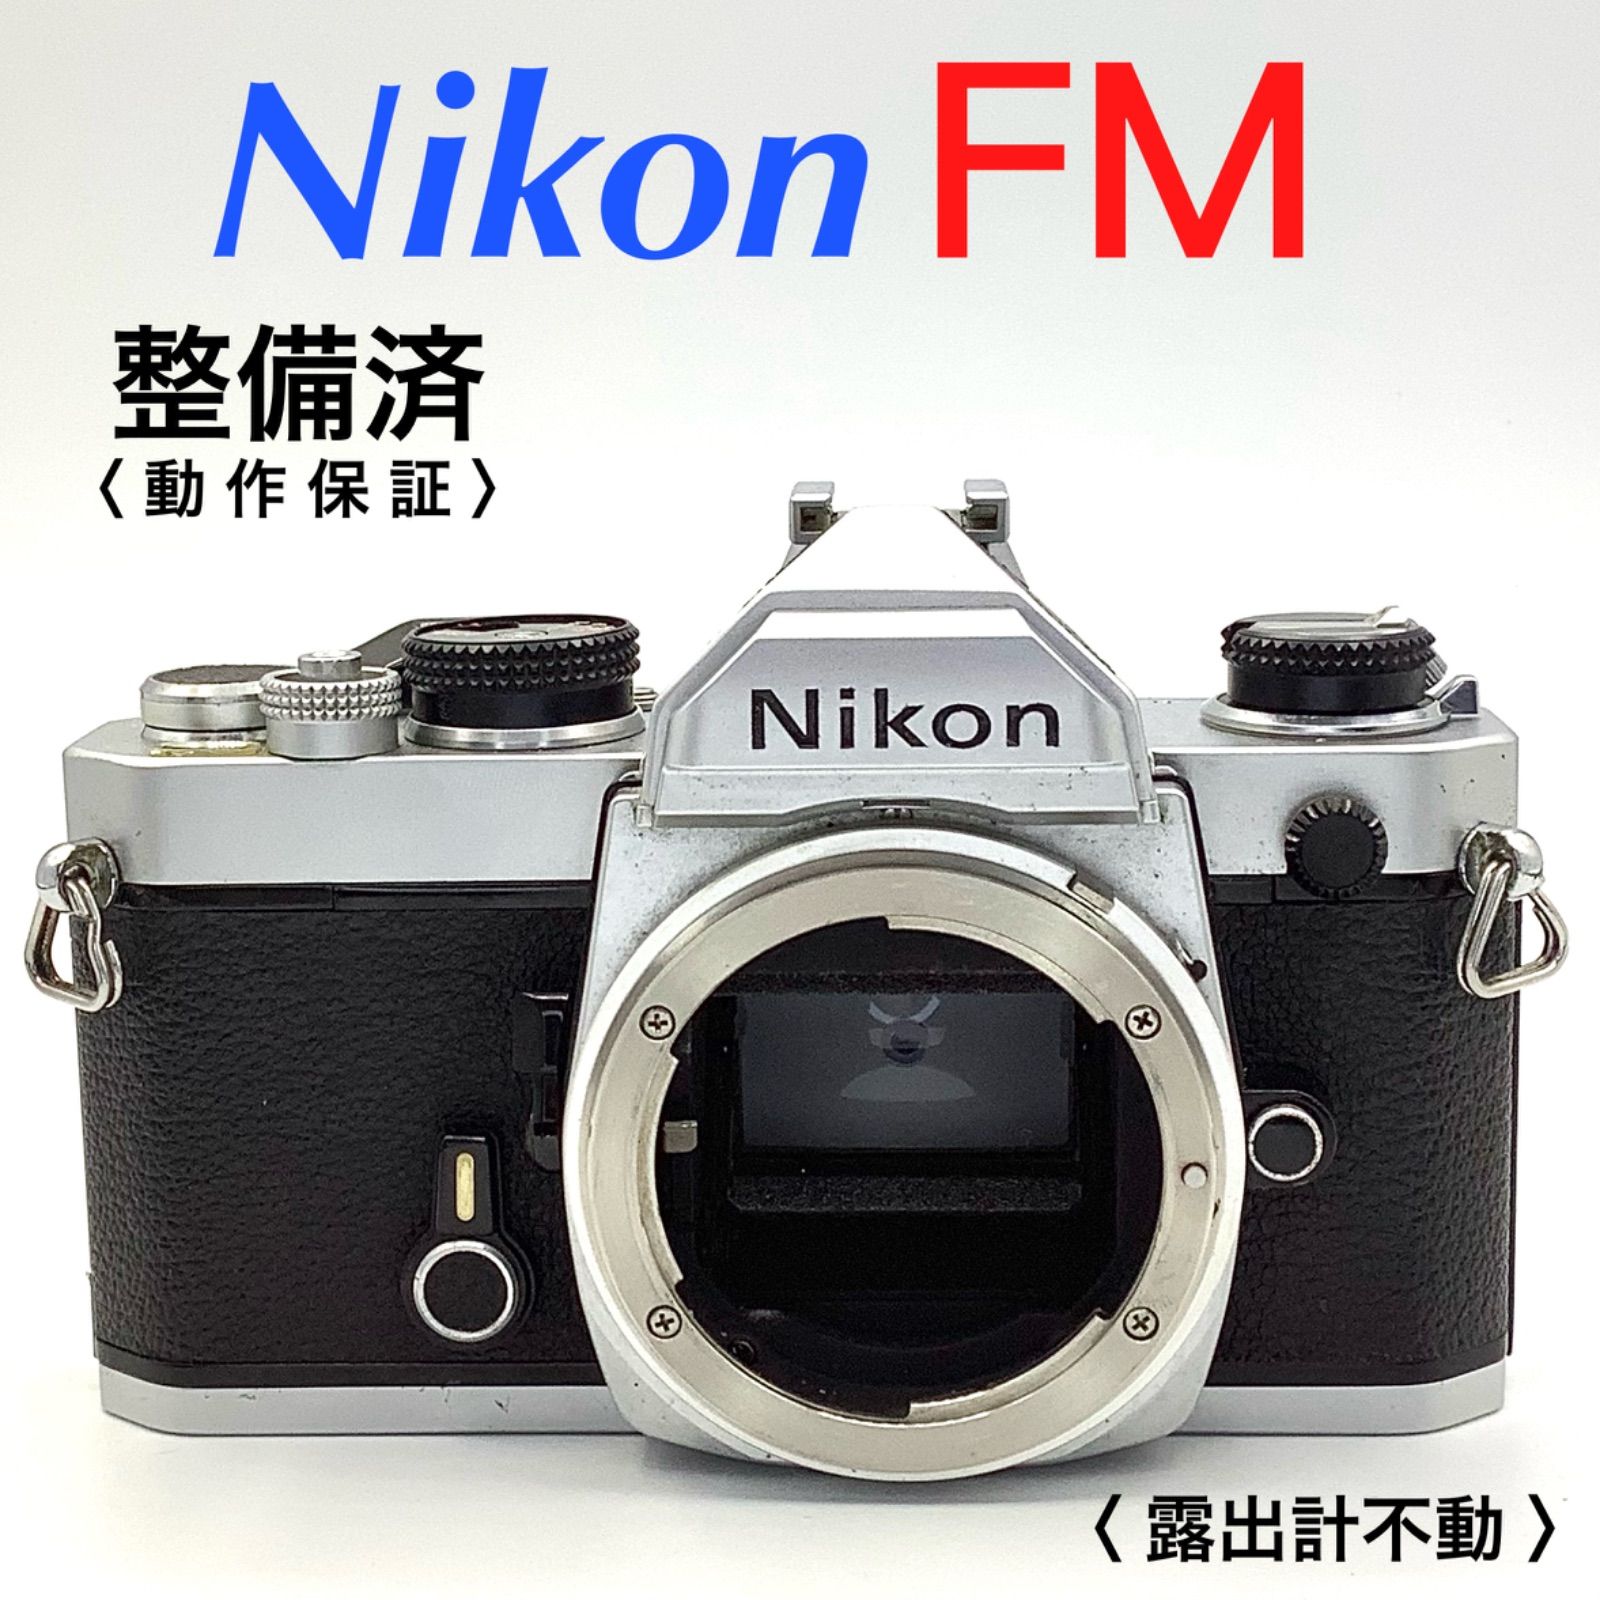 Nikon（ニコン）FM - フィルムカメラ